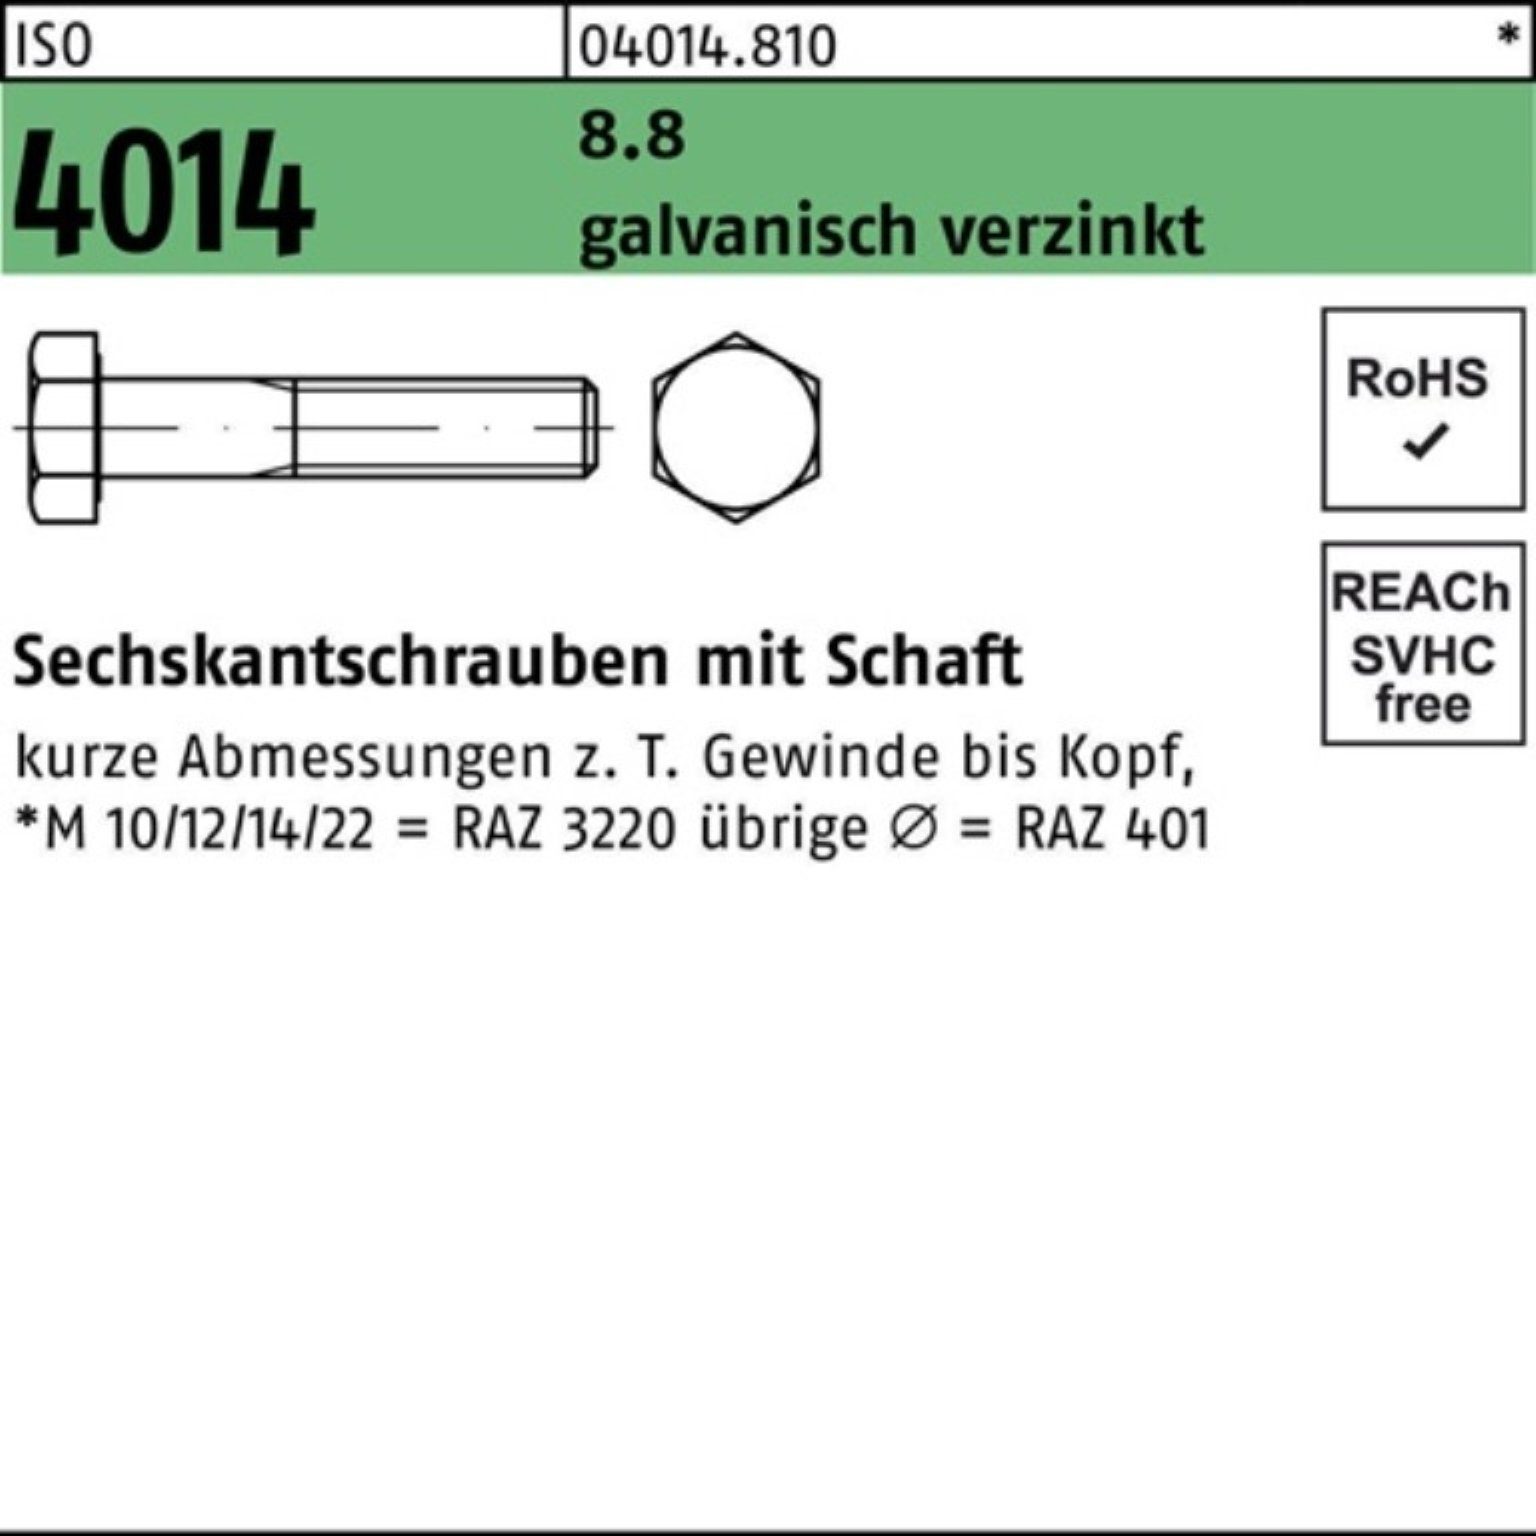 Sechskantschraube Sechskantschraube Pack 4014 ISO Bufab Schaft 150 galv.verz. 2 8.8 100er M18x